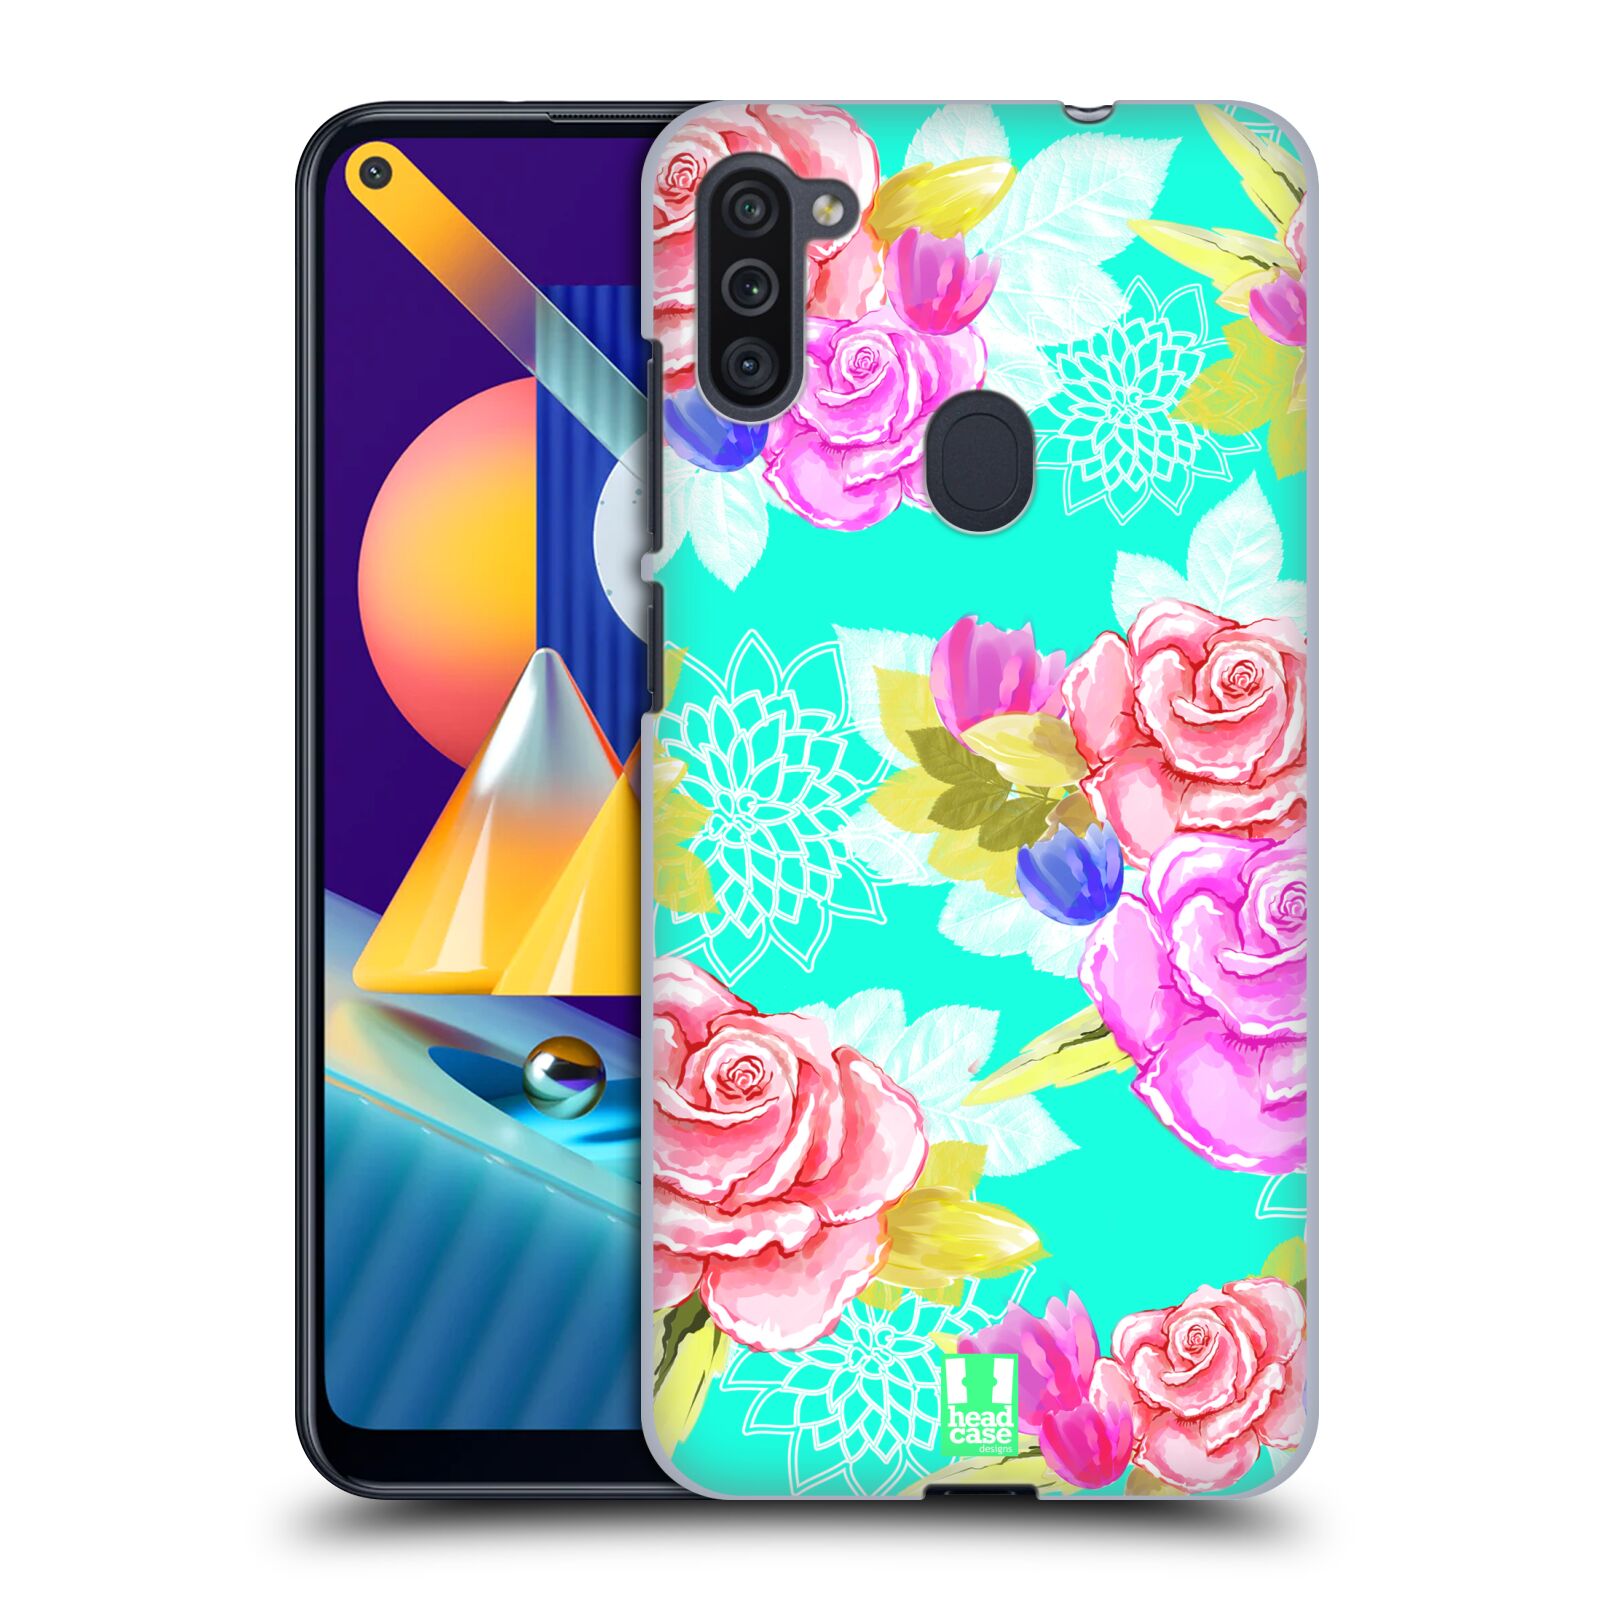 Plastový obal HEAD CASE na mobil Samsung Galaxy M11 vzor Malované květiny barevné AQUA MODRÁ